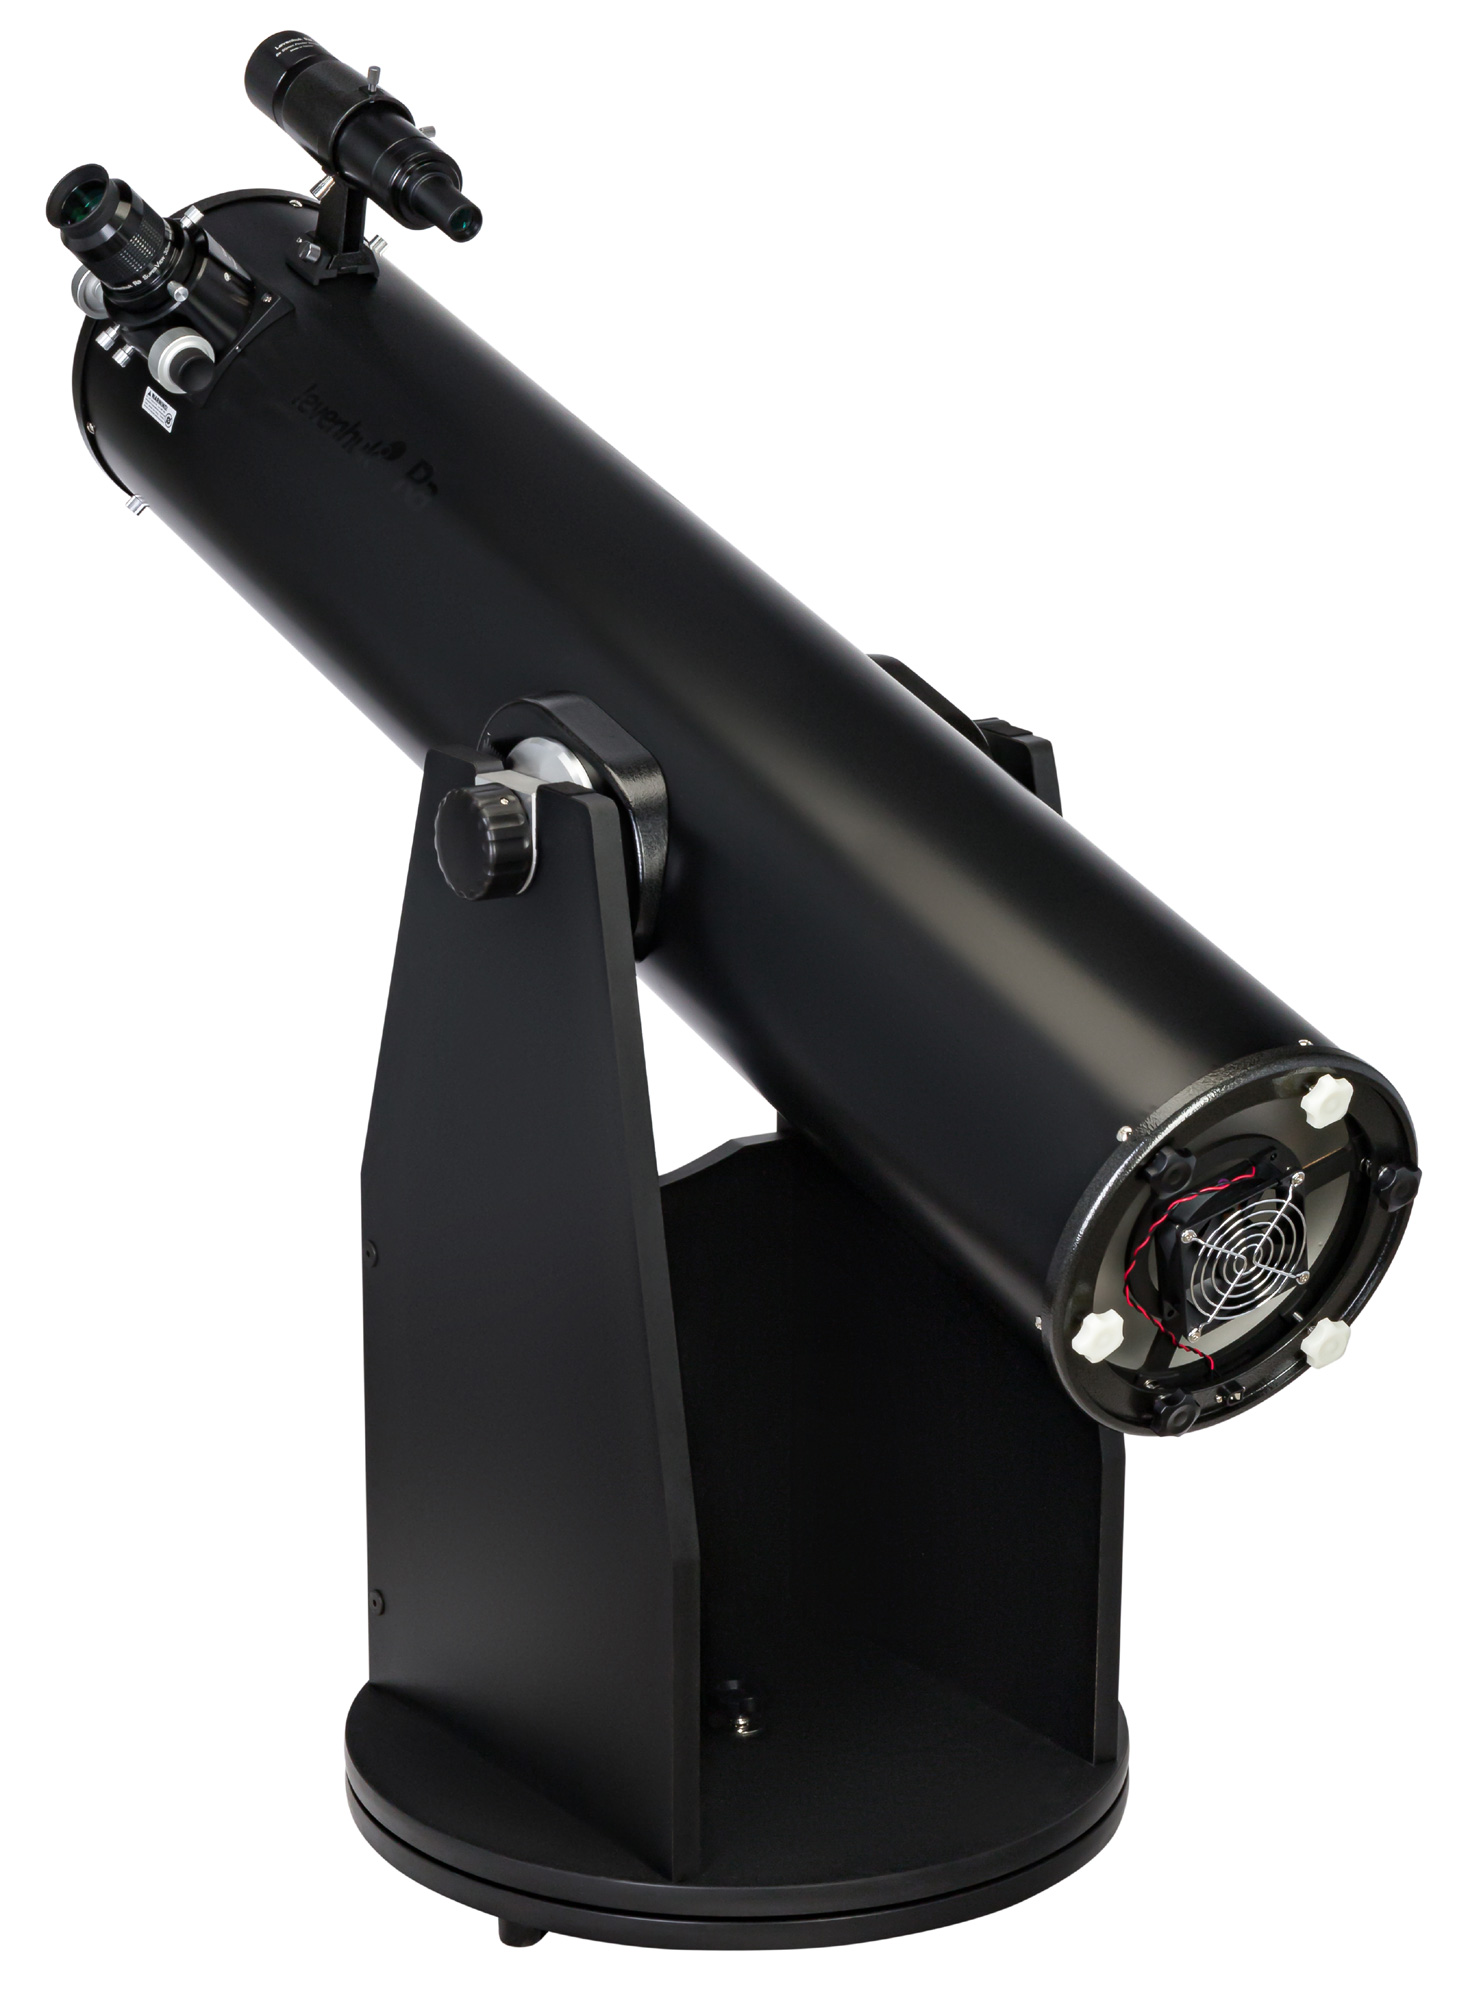 Телескоп Добсона Levenhuk Ra 200N Dob купить по оптимальной цене,  доставка по России, гарантия качества